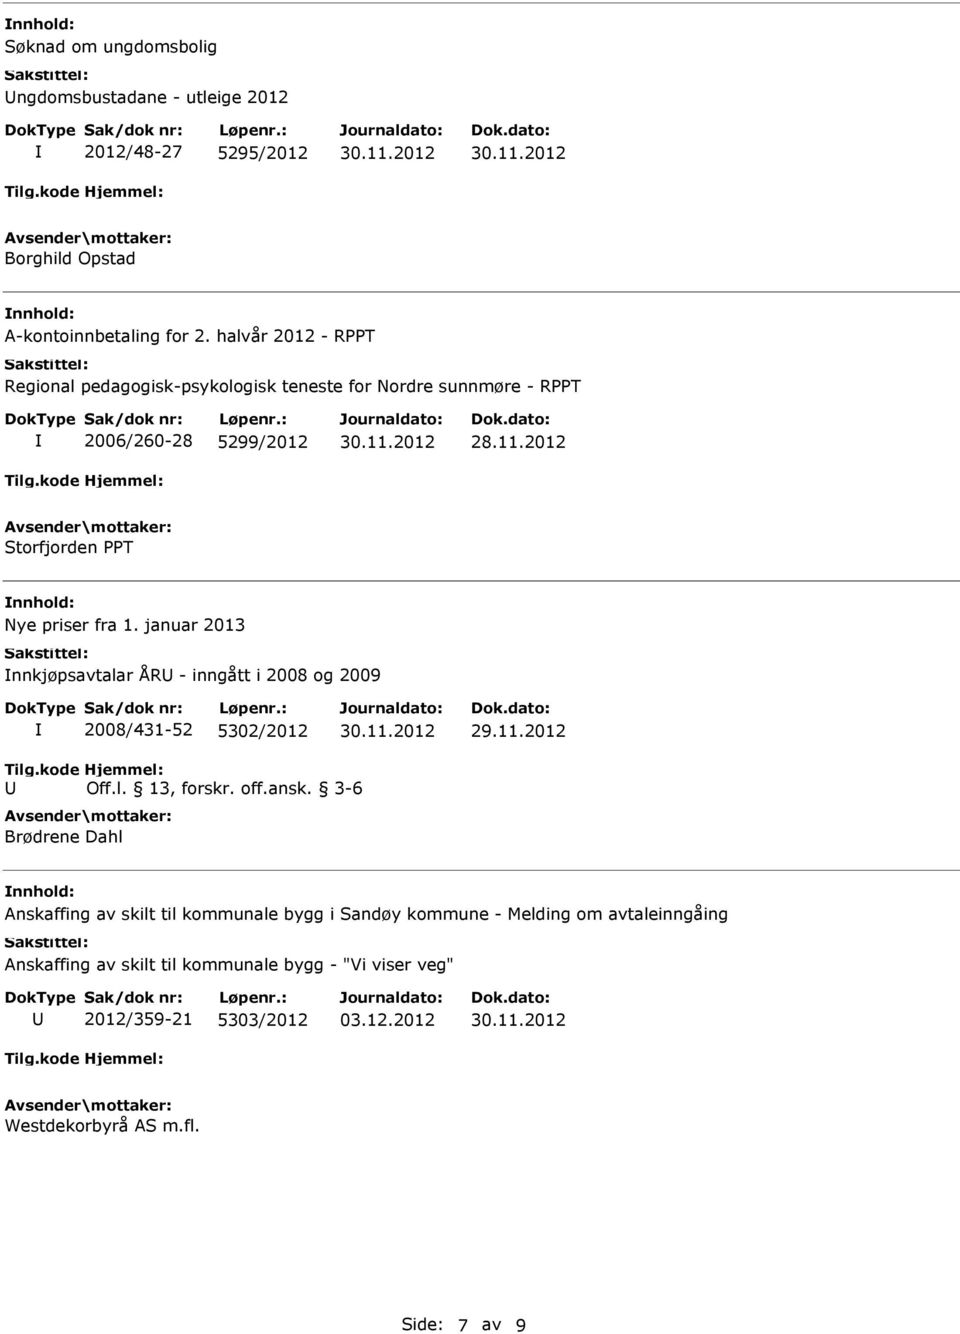 januar 2013 nnkjøpsavtalar ÅR - inngått i 2008 og 2009 2008/431-52 5302/2012 Off.l. 13, forskr. off.ansk.